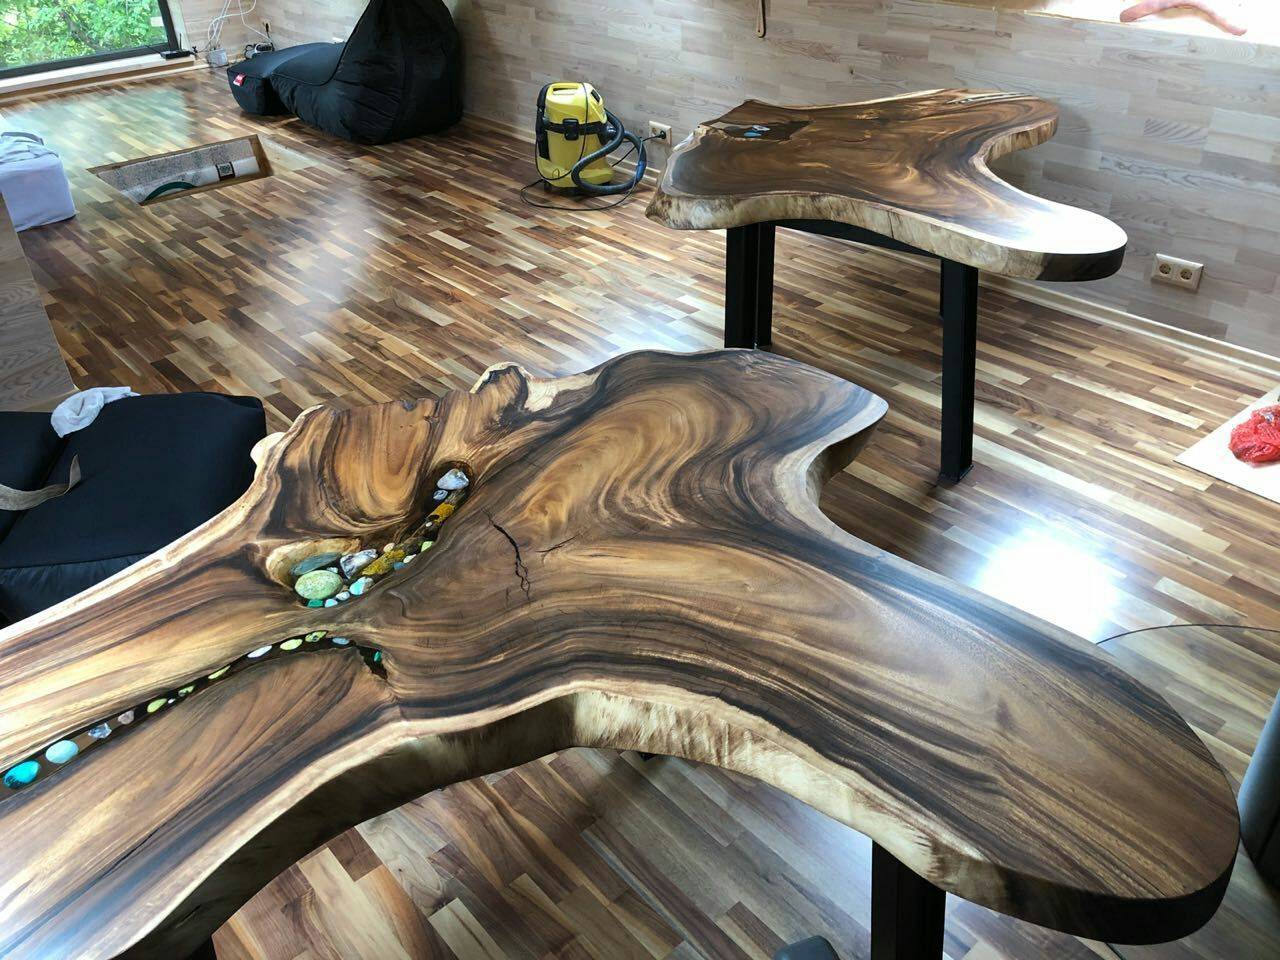 Деревянный стол:  уникальные дизайн-проекты для создания стола своими руками (106 фото + инструкция)